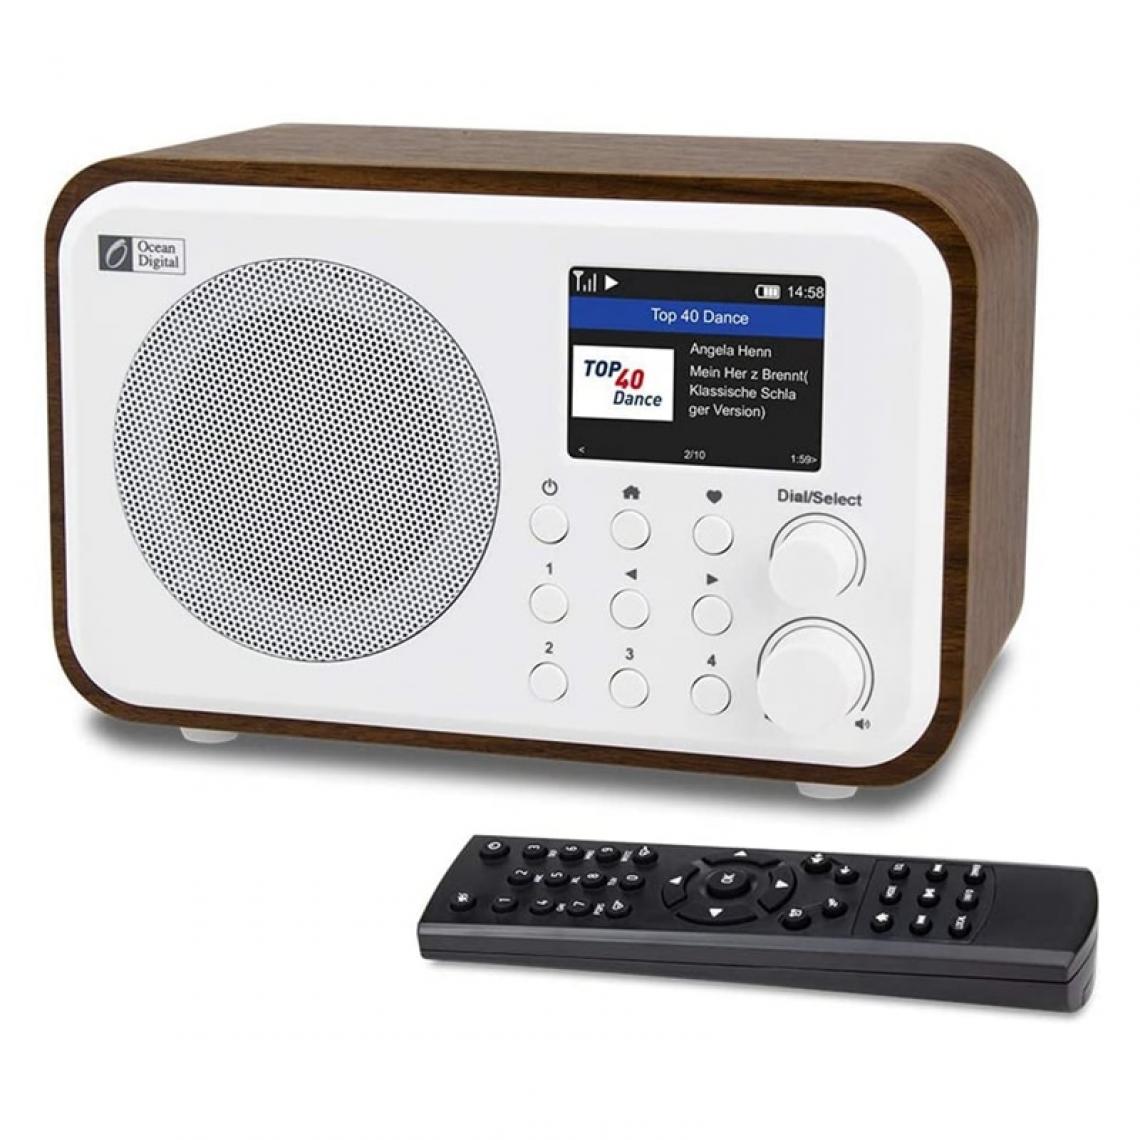 Universal - Récepteur radio Internet WiFi WR 336N Radio numérique portable avec batterie rechargeable Récepteur Bluetooth - Radio